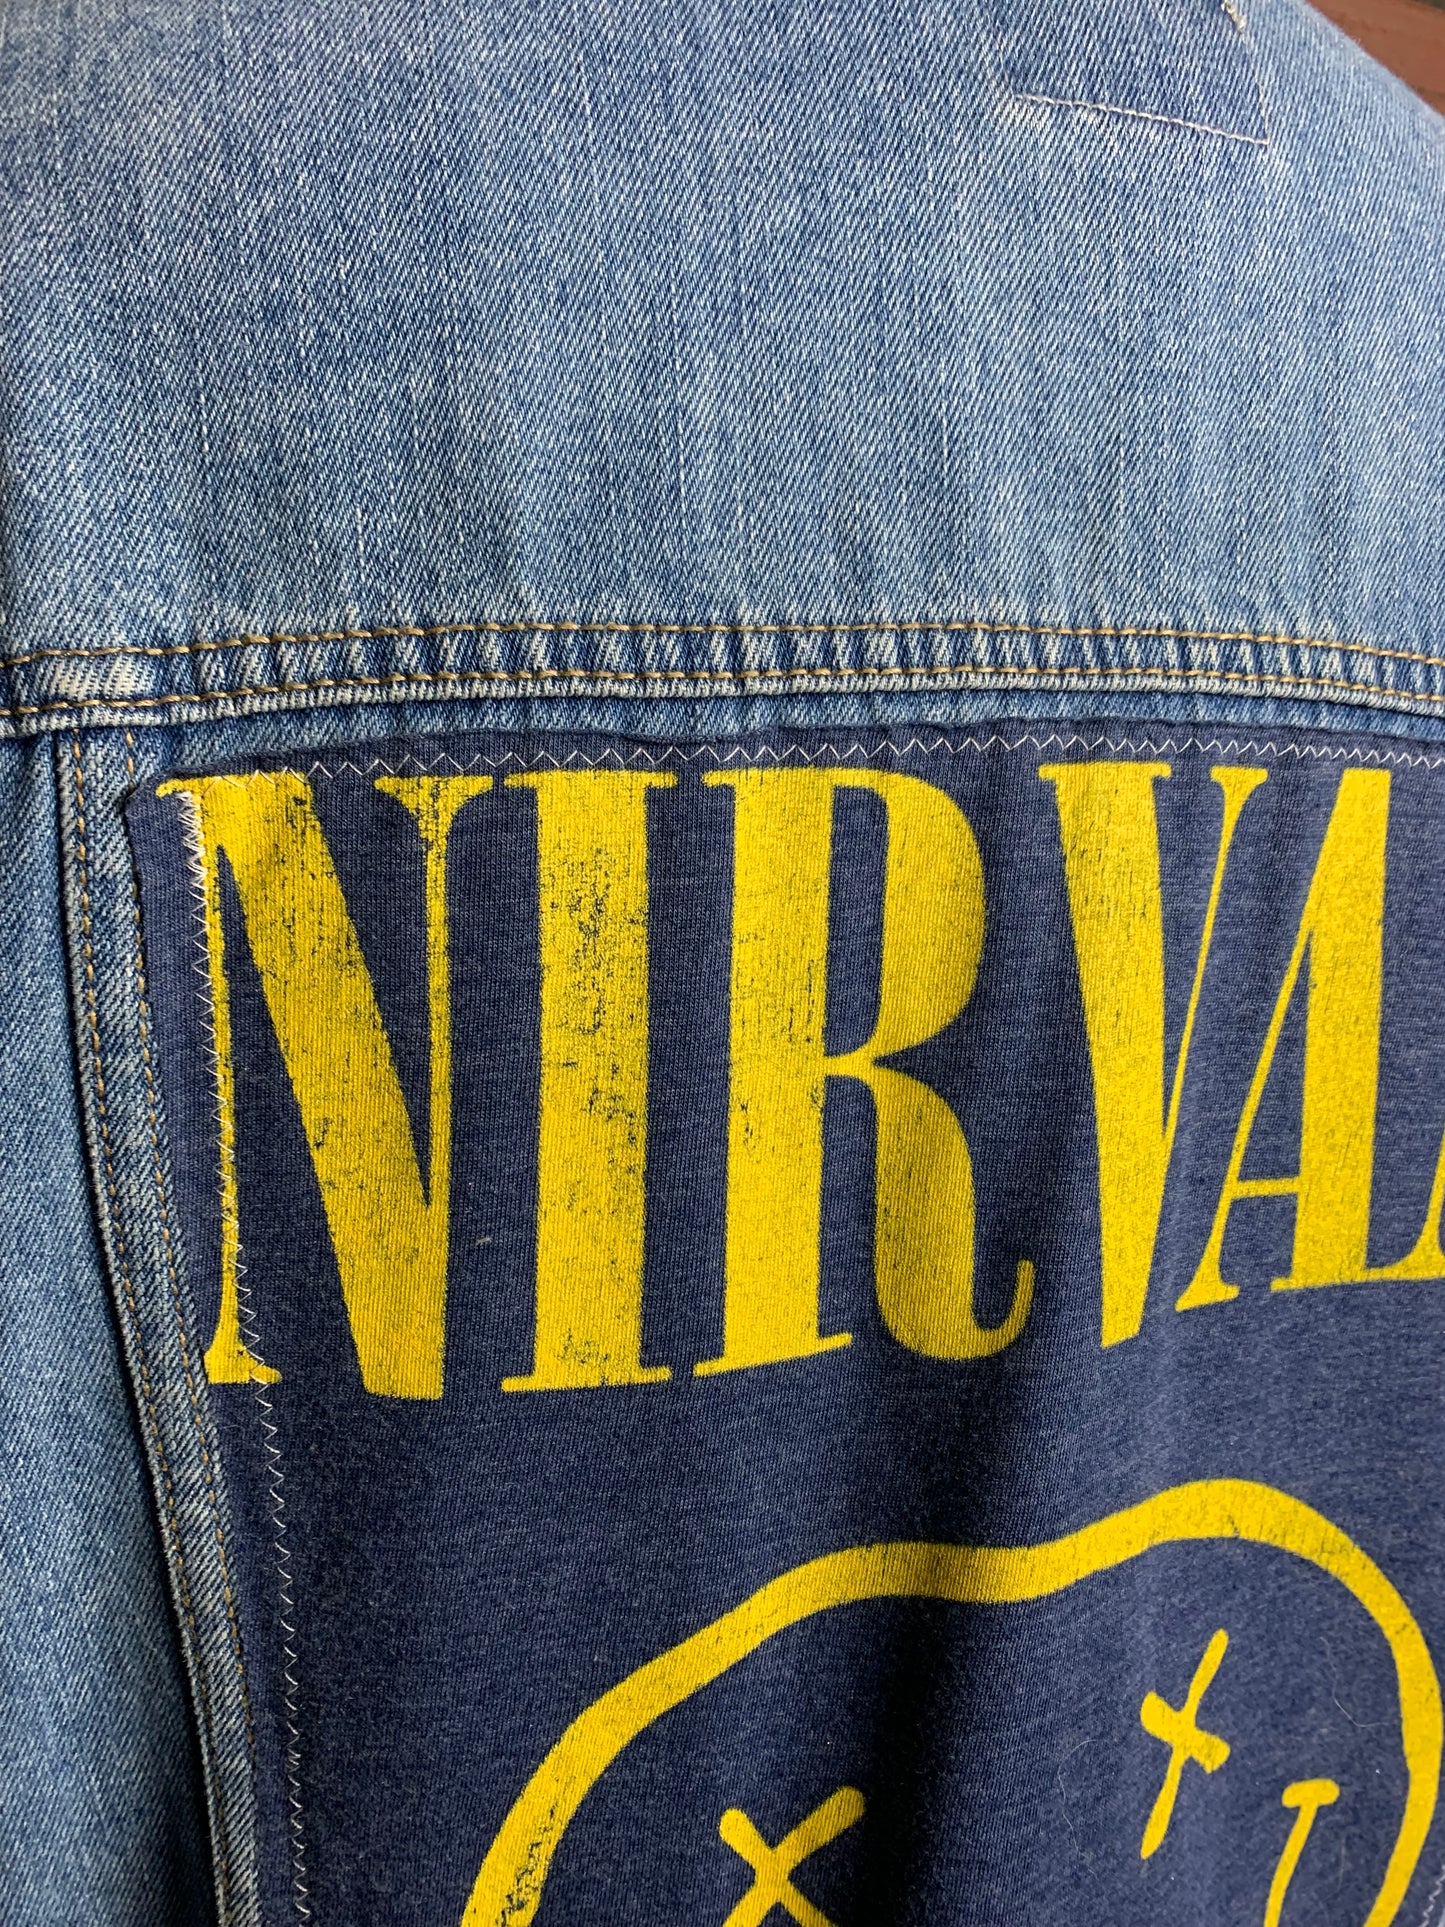 Nirvana Jean Jacket Custom Rework XXL